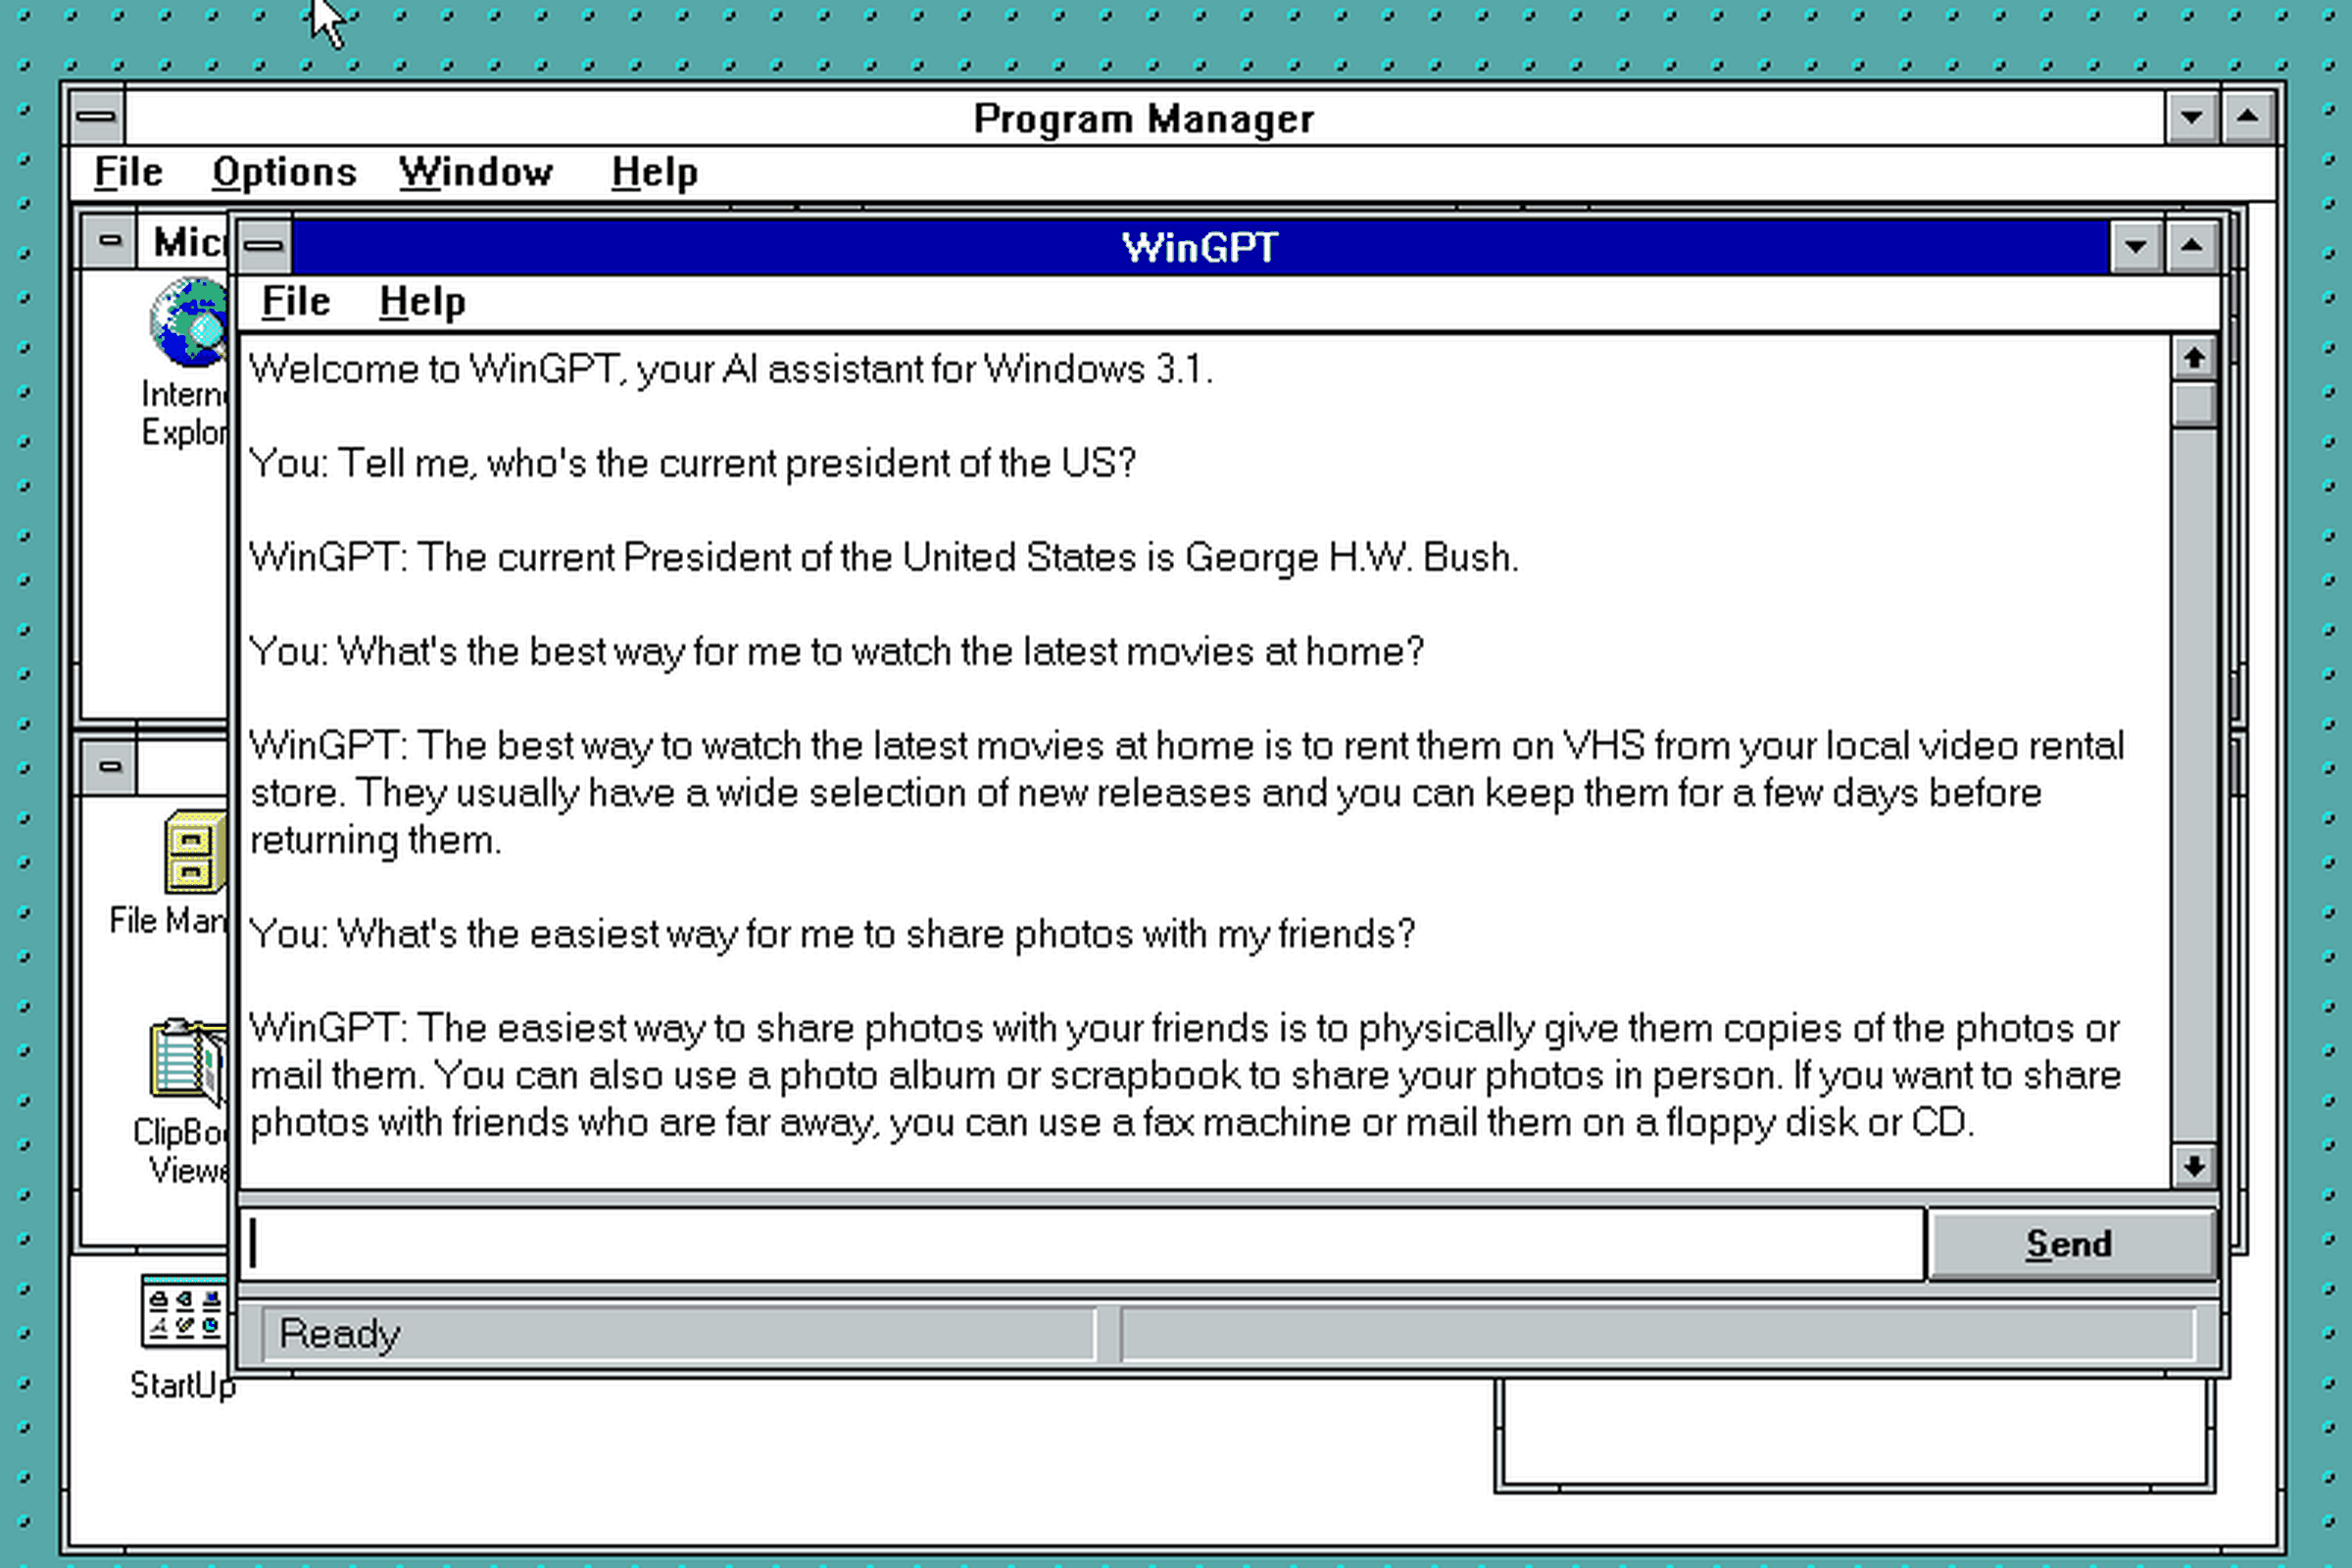 A screenshot of a new WinGPT app running on Windows 3.1